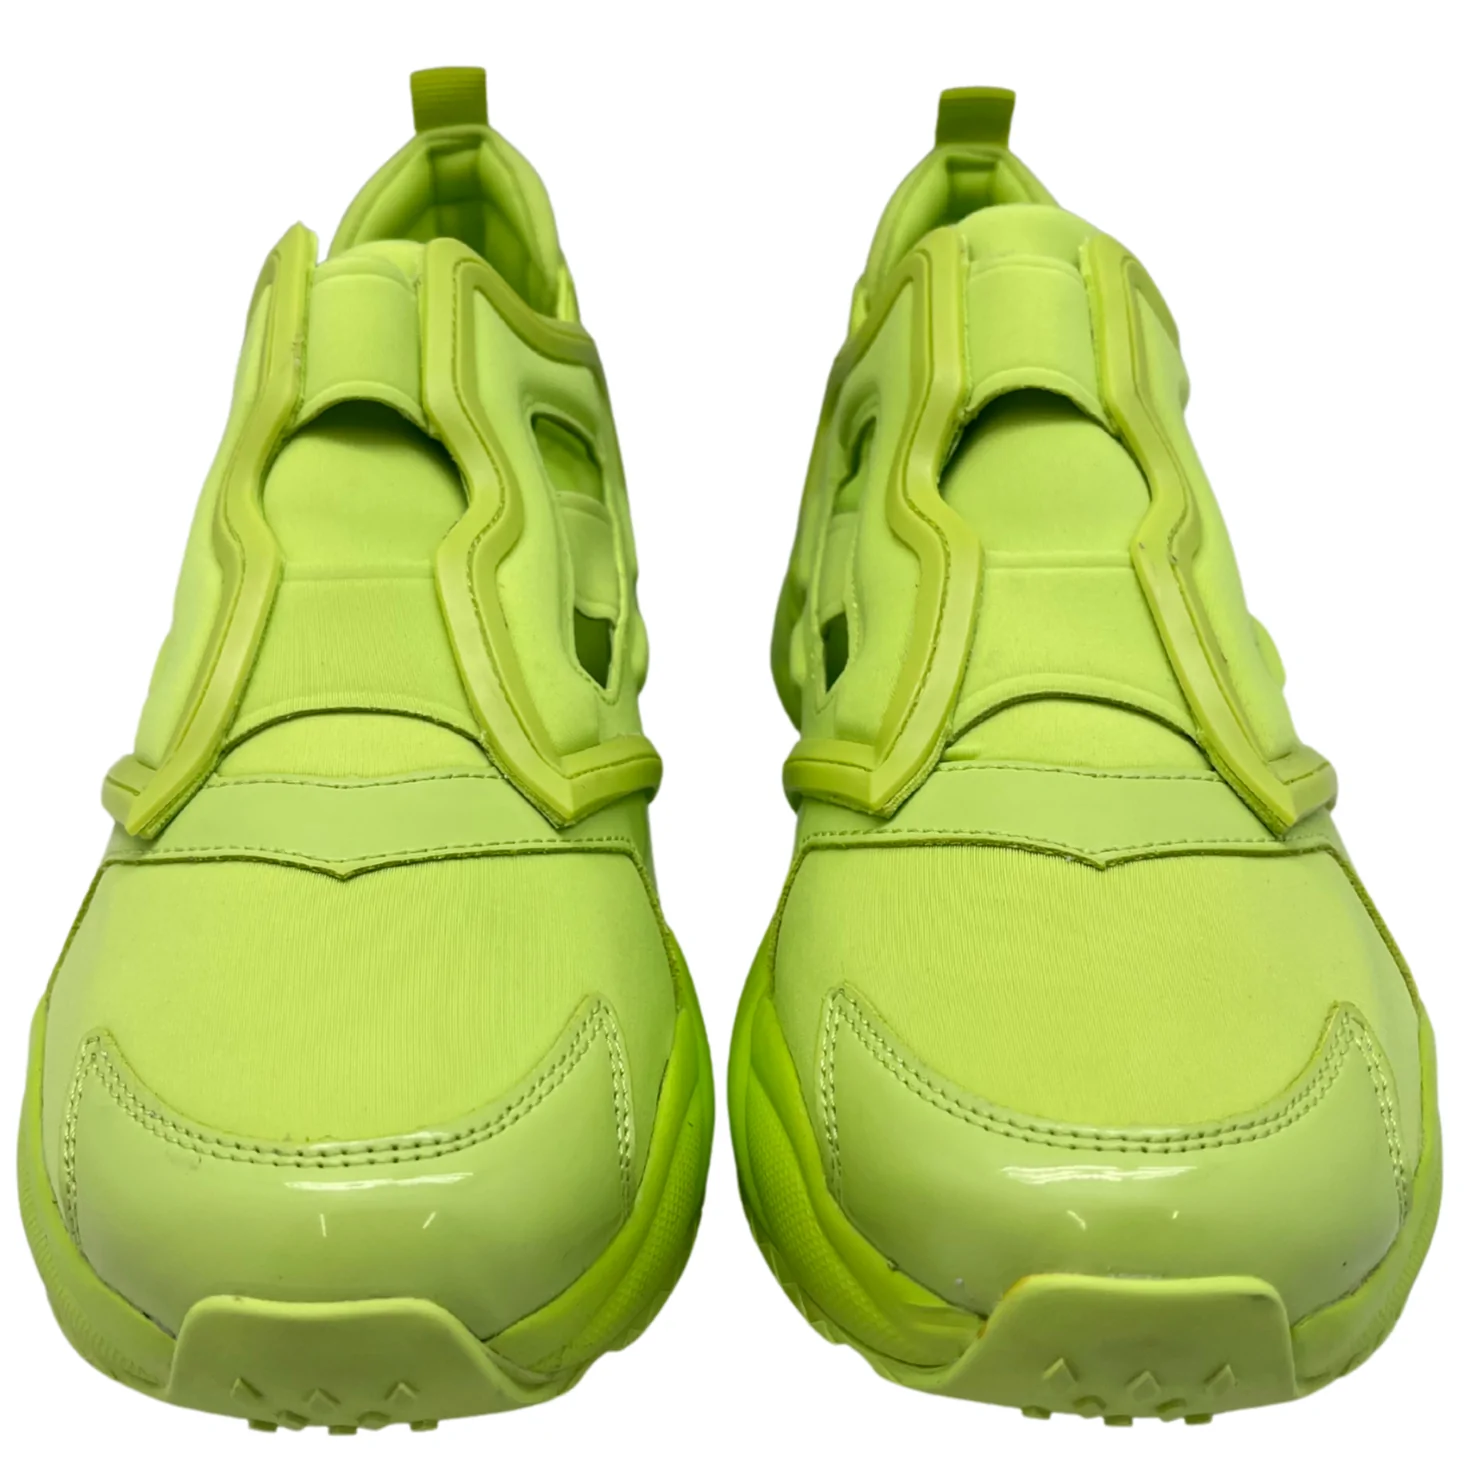 Aldo Sneaker Sandal Shoe / Zeldee / Bright Yellow / Size 8